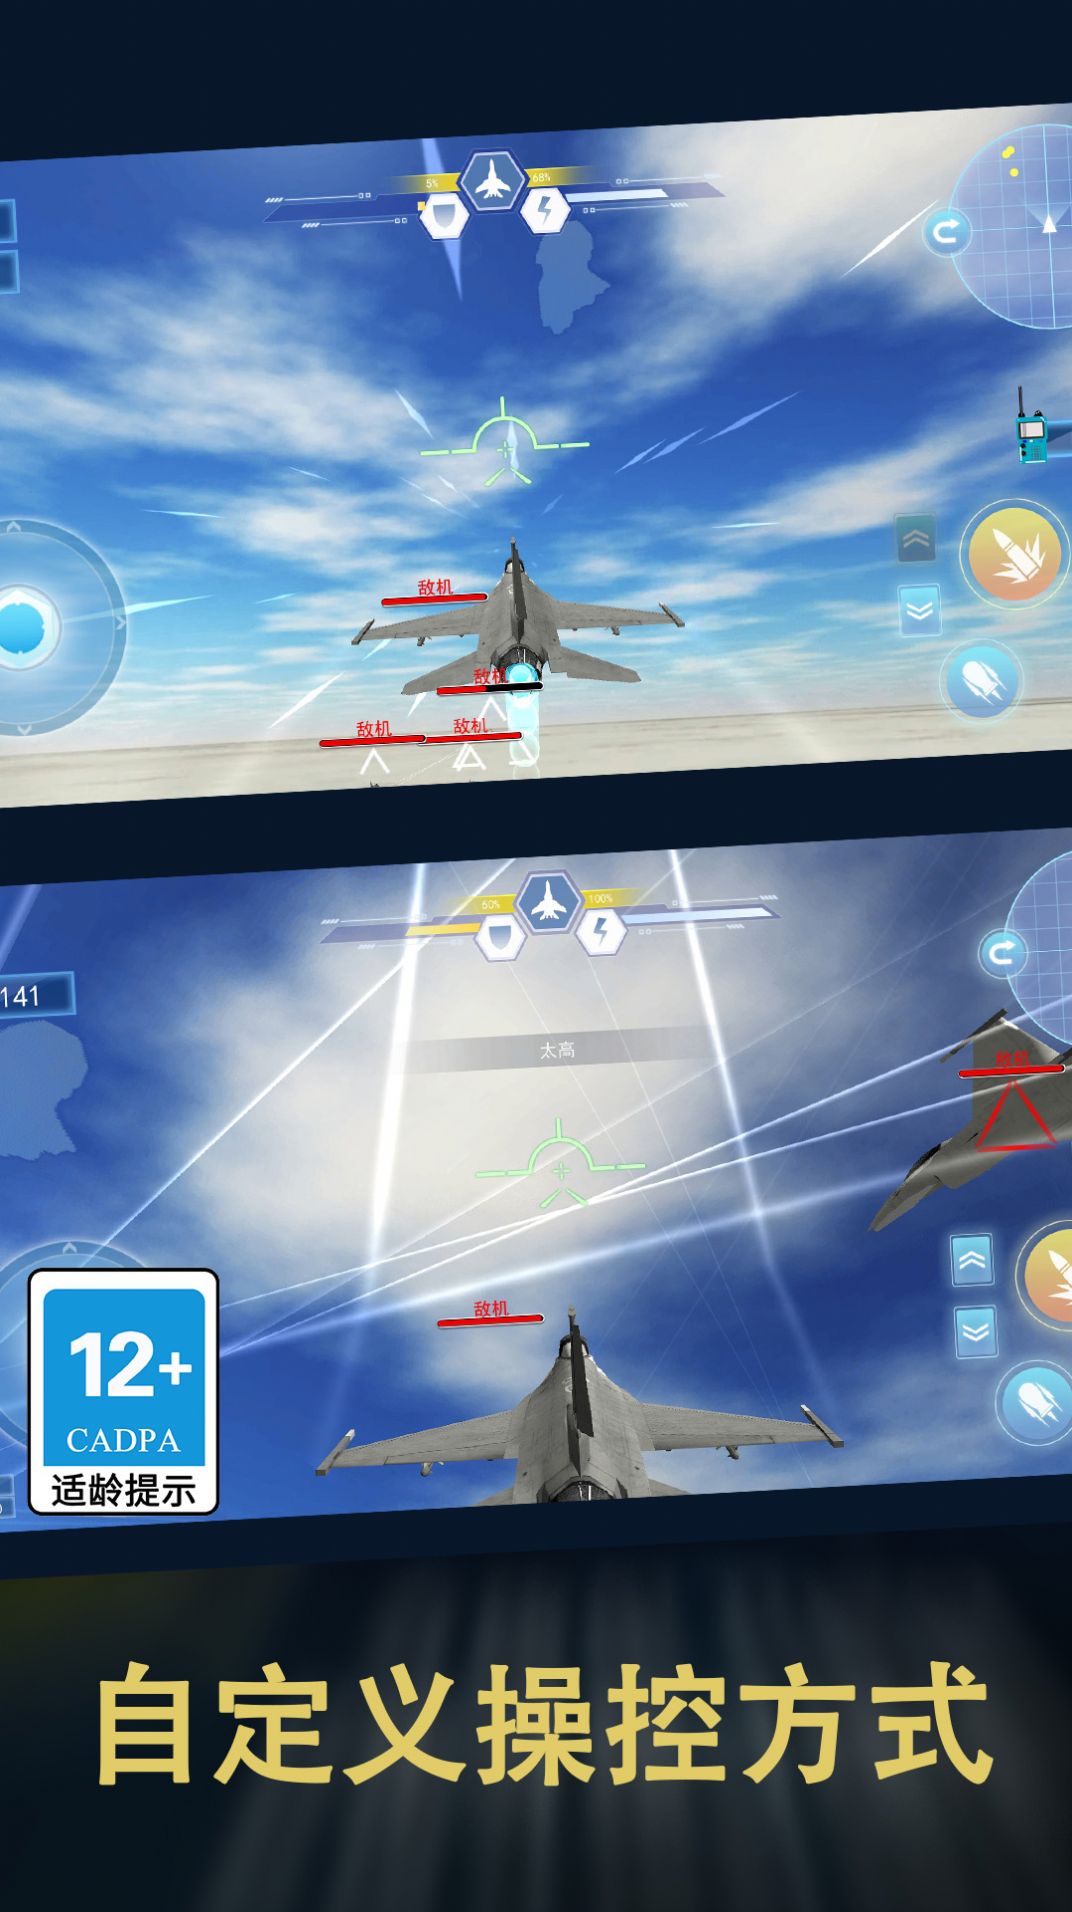 和平荣耀空战吃鸡游戏下载,和平荣耀空战吃鸡游戏官方版 2.0.0